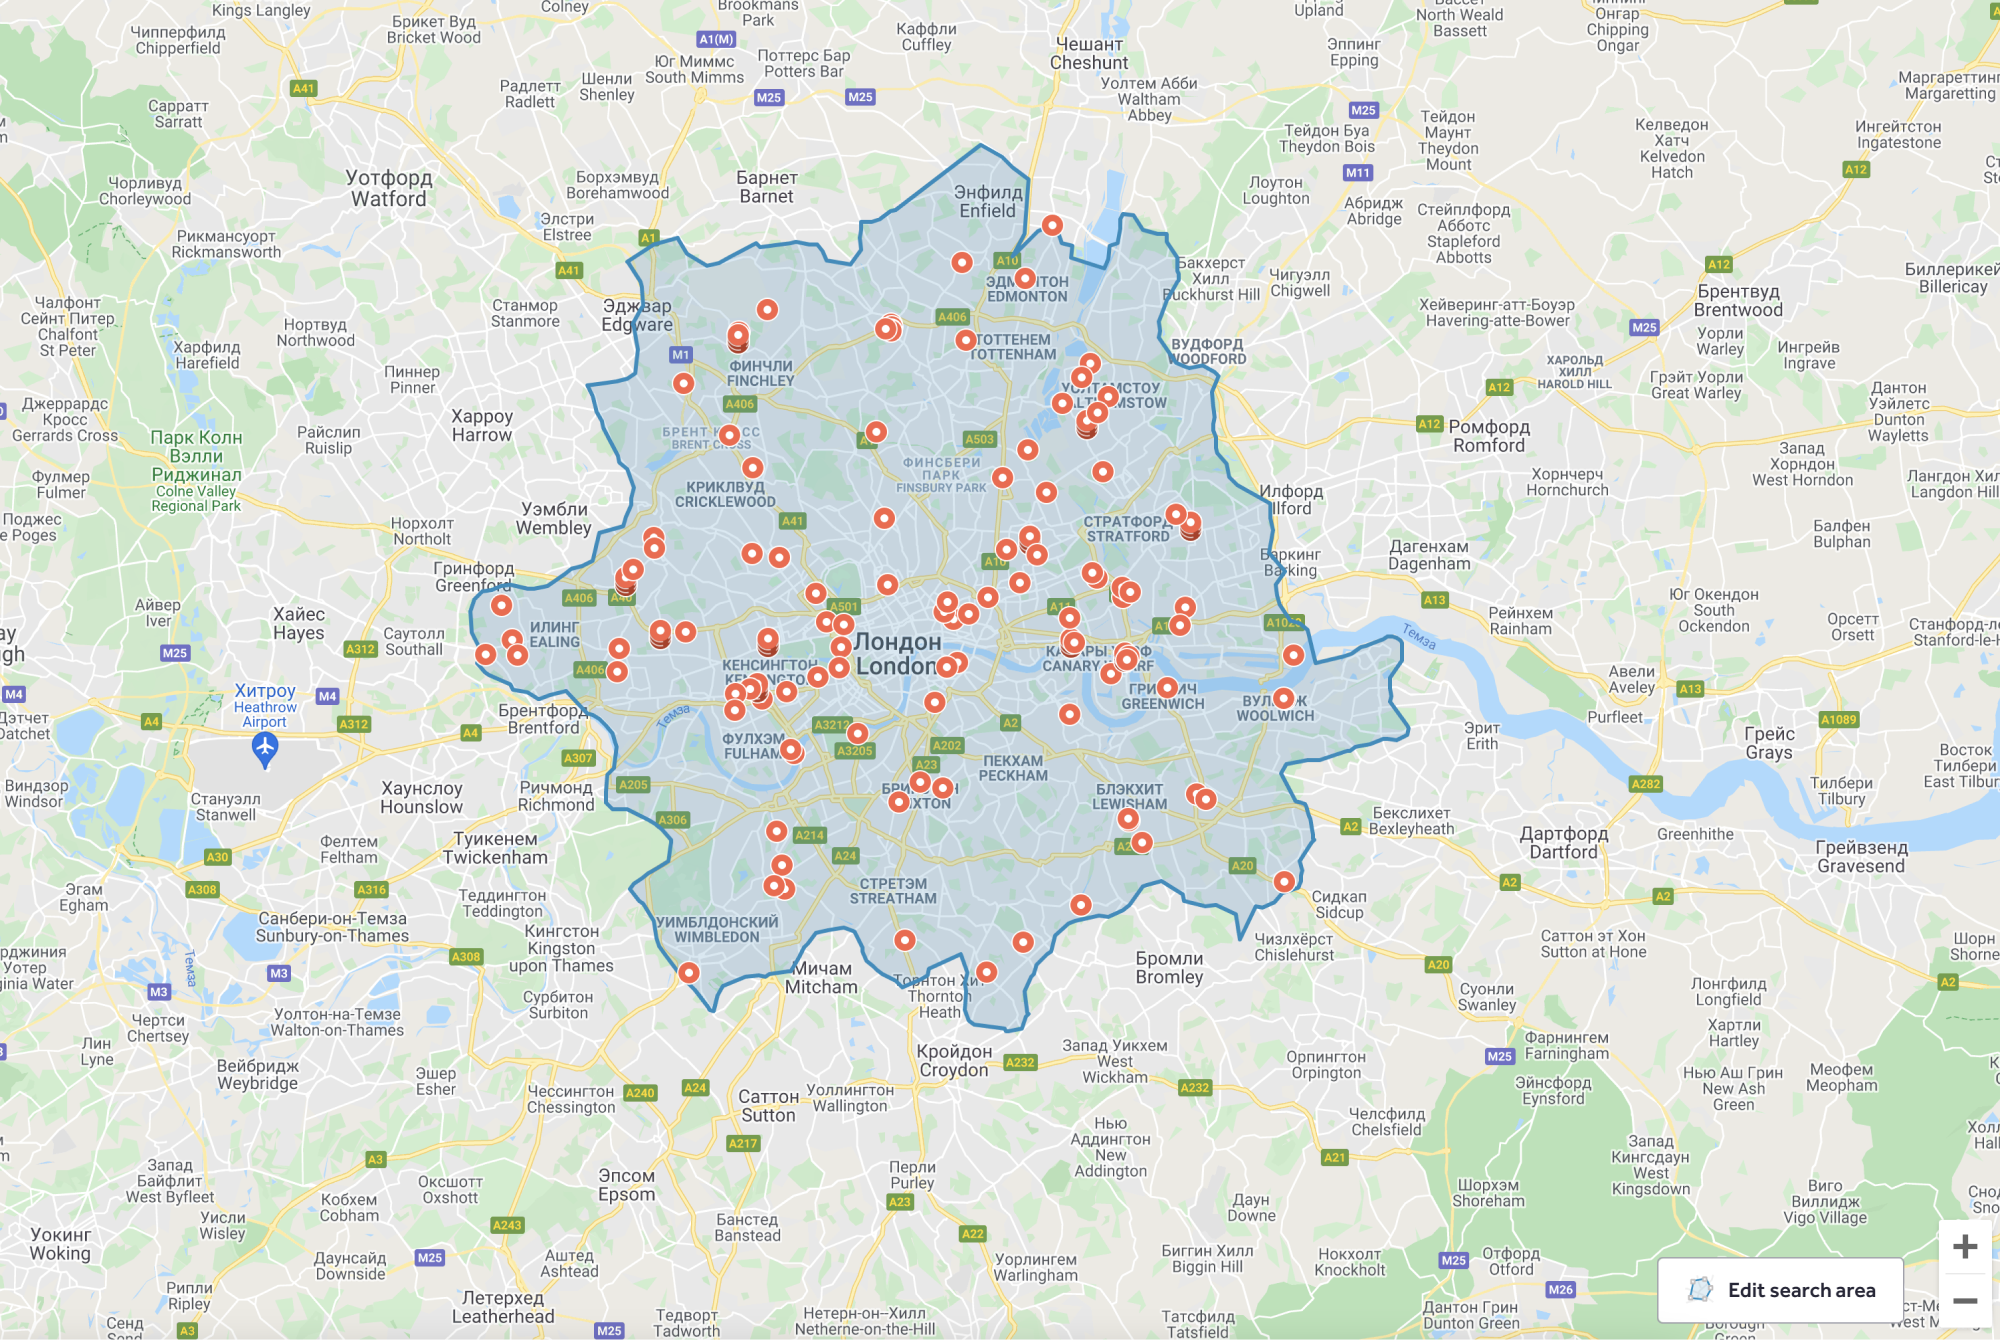 Так выглядят предложения с продажей недвижимости до 100 000 £ на карте Лондона. Здесь все — от парковочных мест и земли до домов-лодок и небольших апартаментов. Источник: rightmove.co.uk